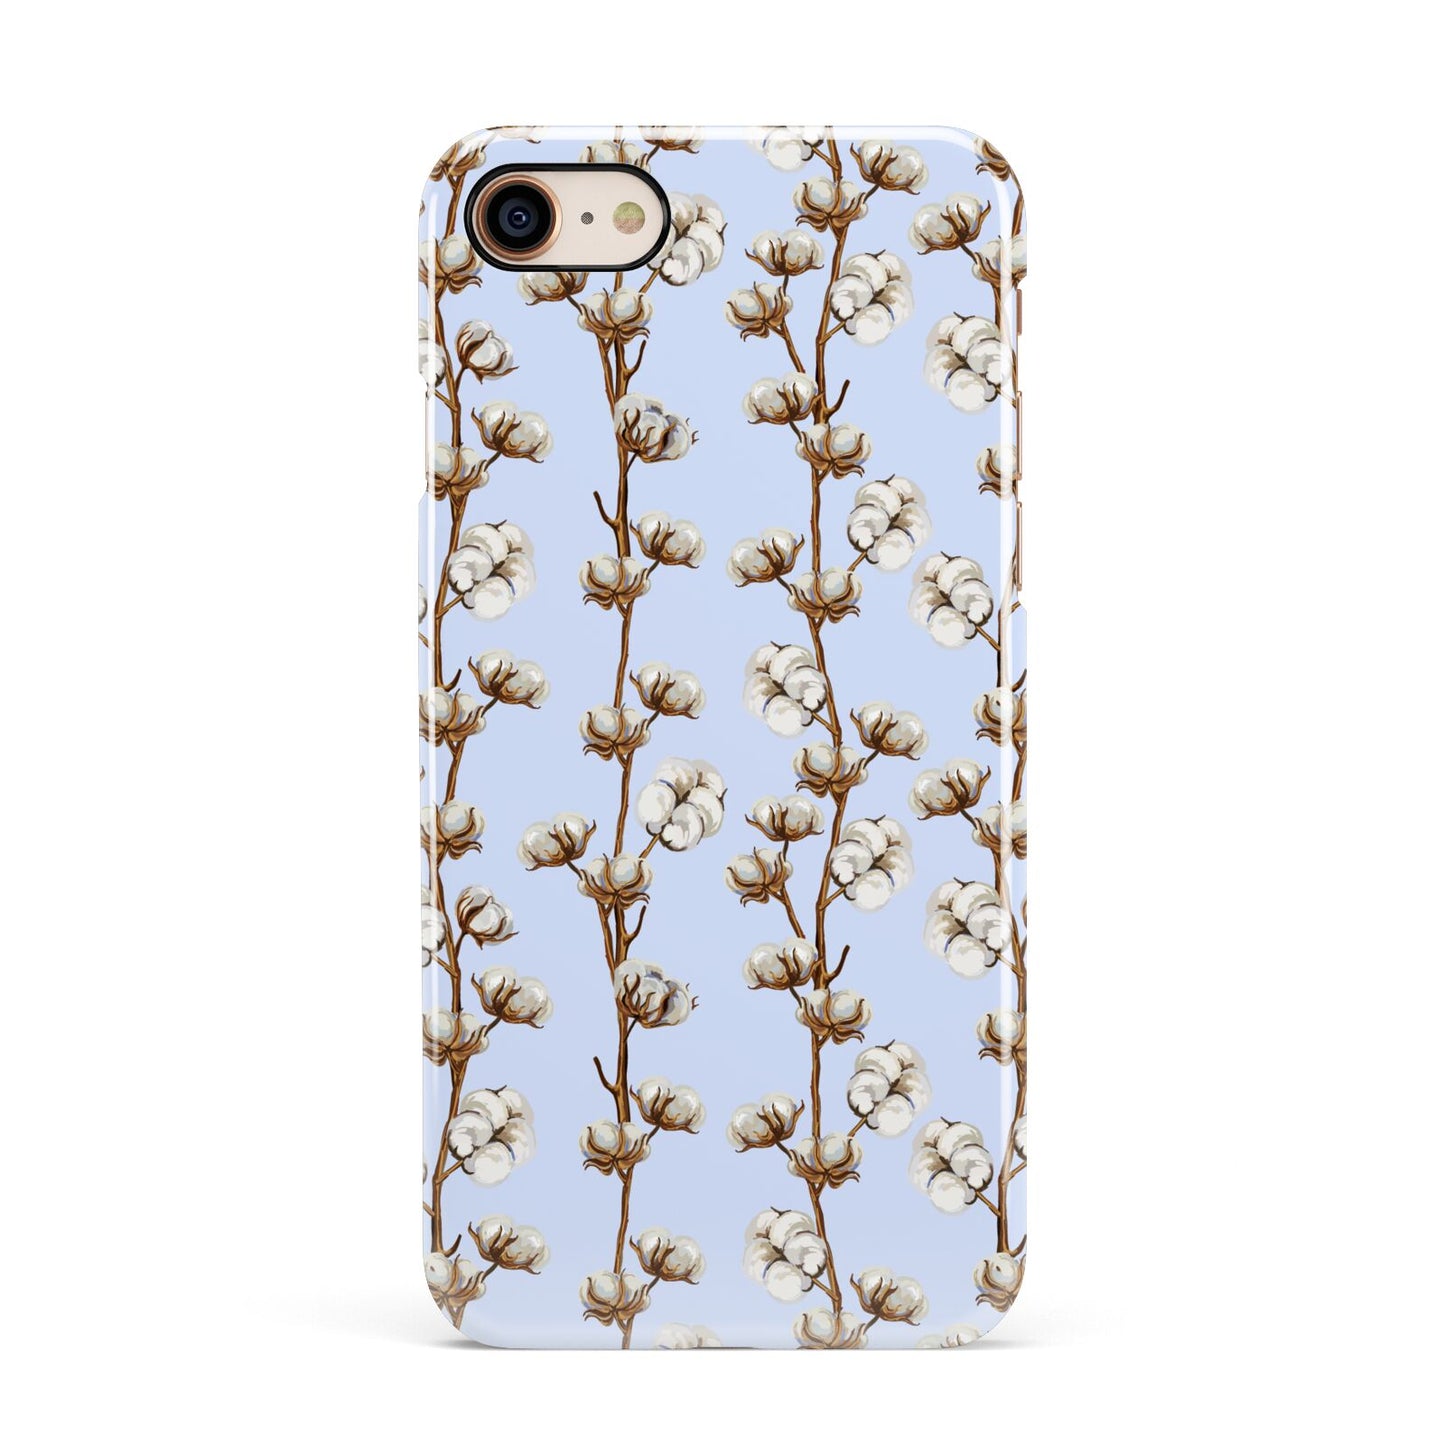 Cotton Branch Apple iPhone 7 8 3D Snap Case